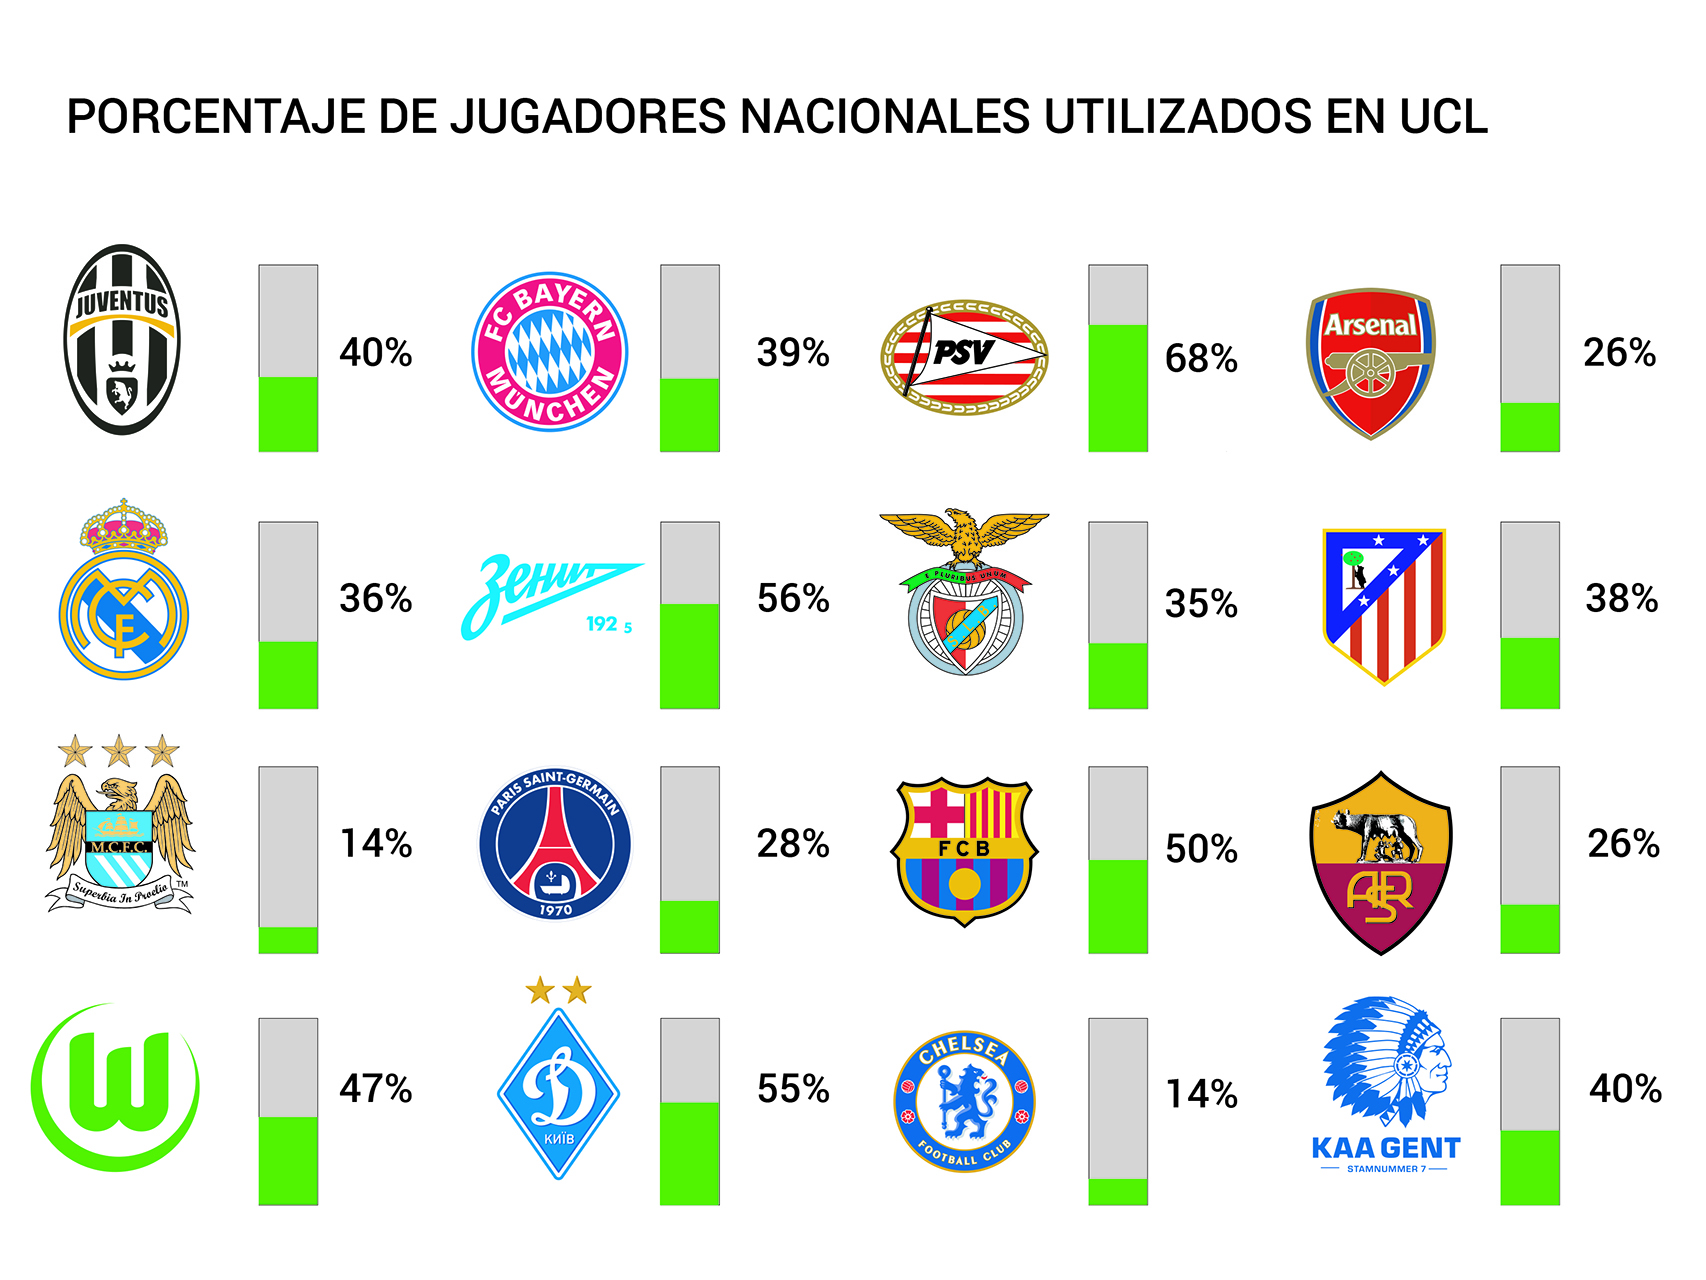 Gráfico de porcentaje de jugadores nacionales utilizado por cada club.